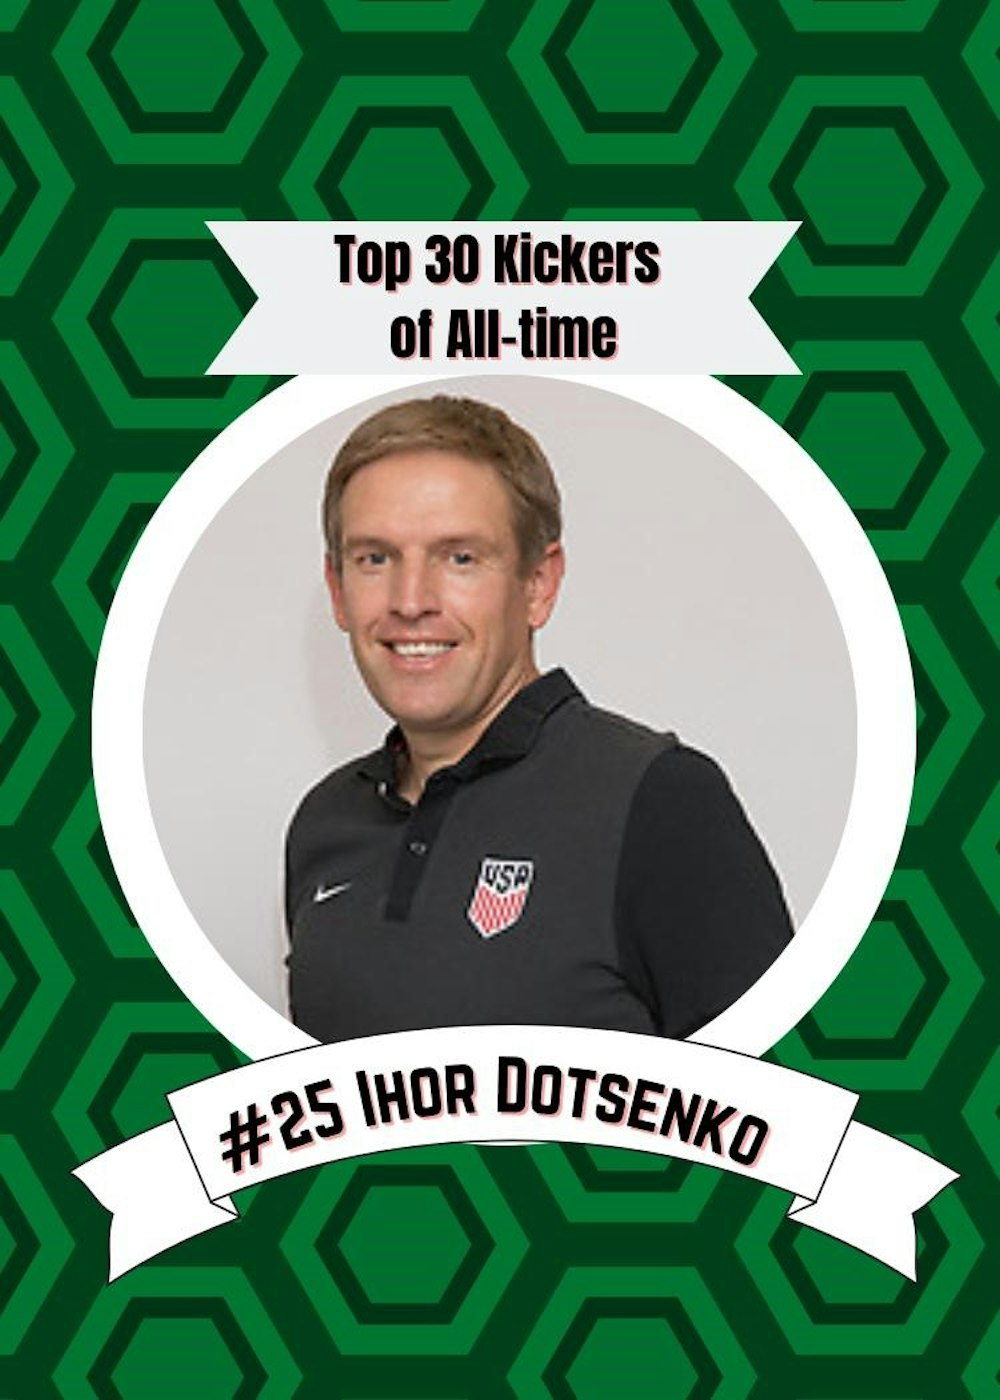 Kickers Countdown- #25 Ihor Dotsenko